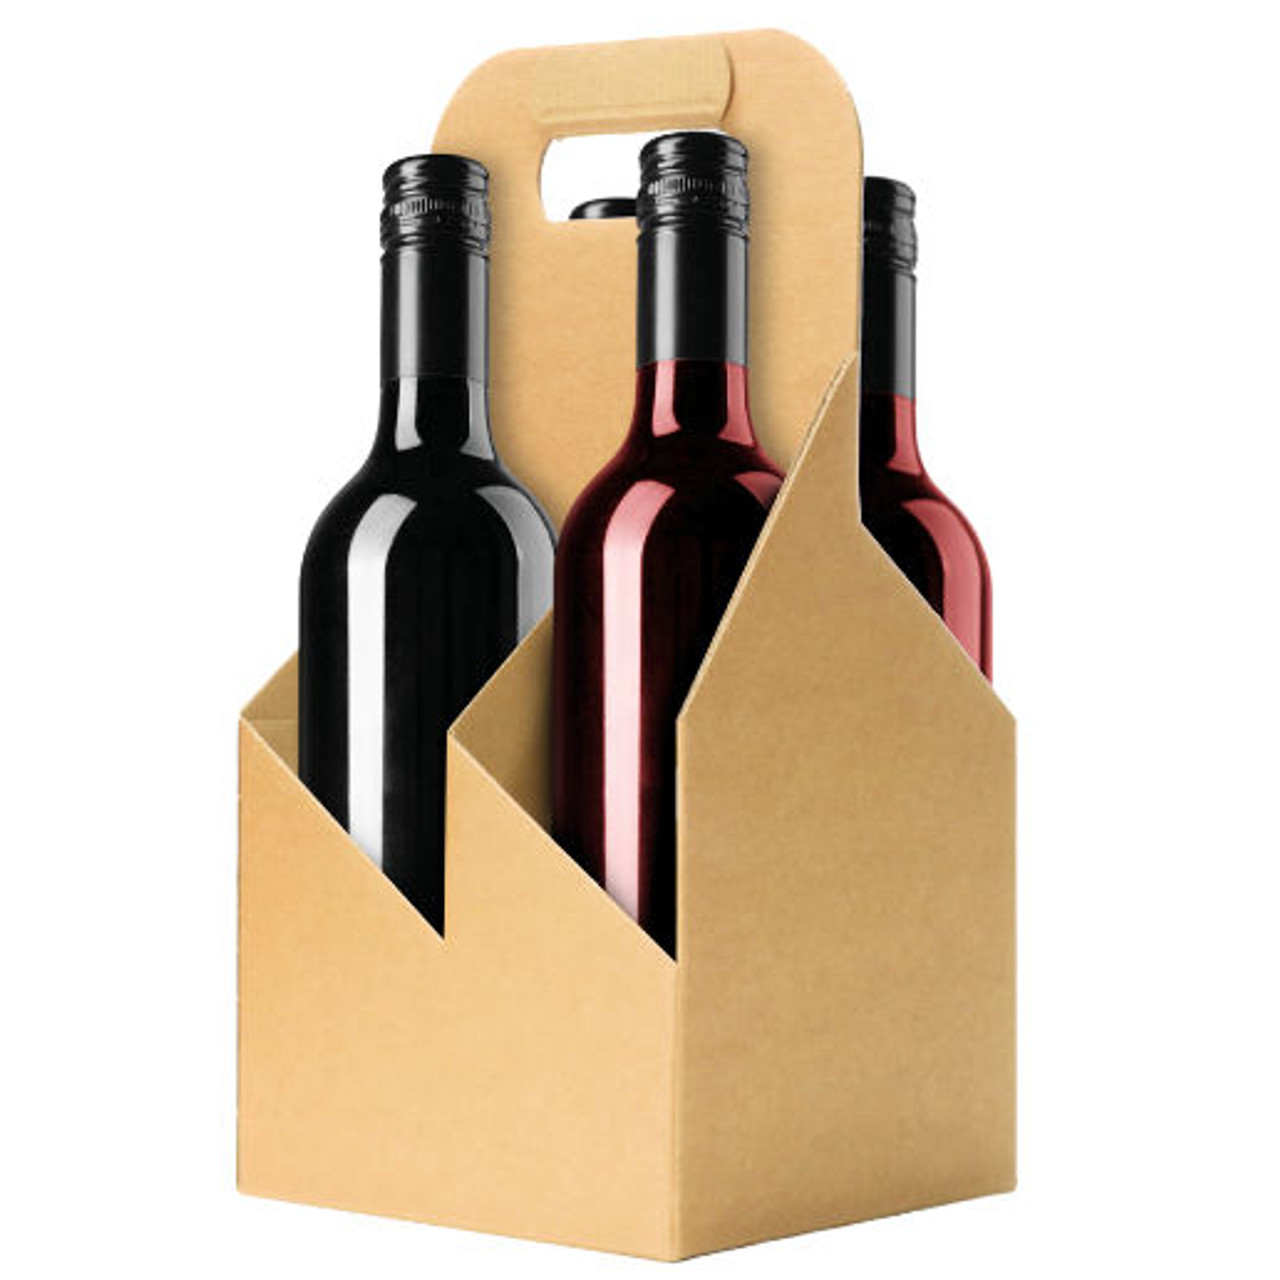 4 Bottle Sturdy cardboard wine carrier ea.